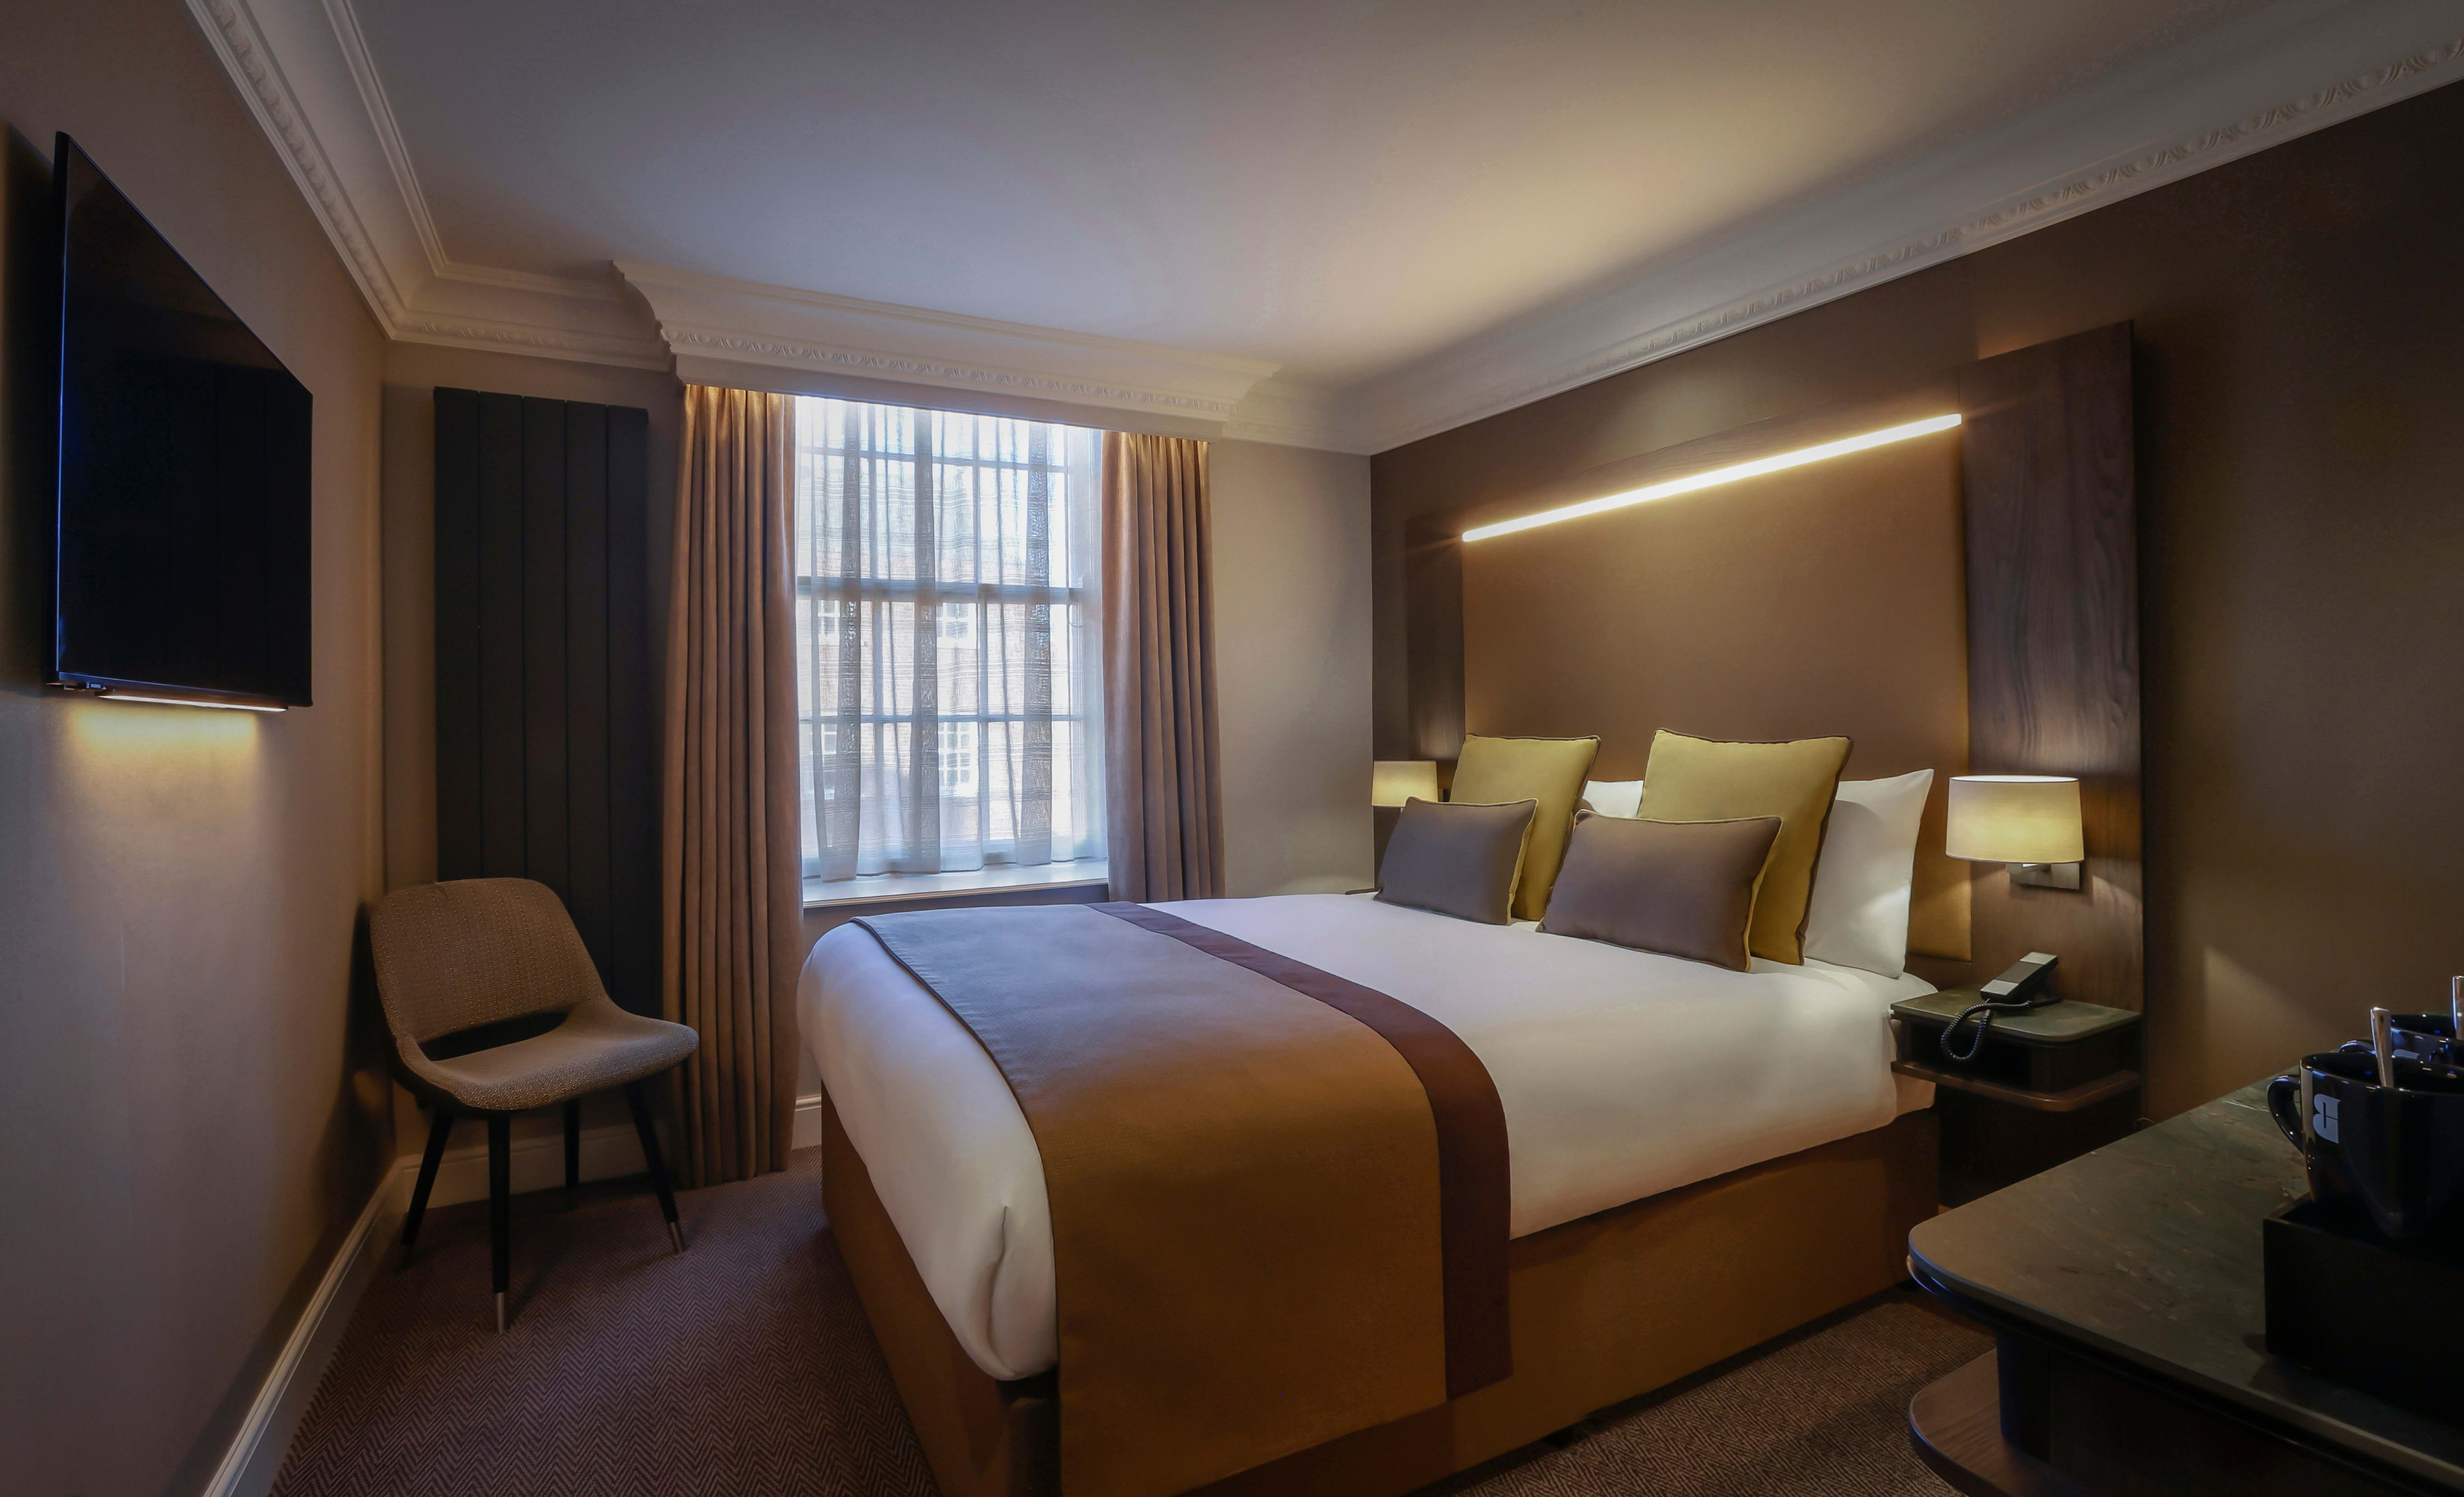 Belvedere Double Room - Hotel Rooms in Dublin